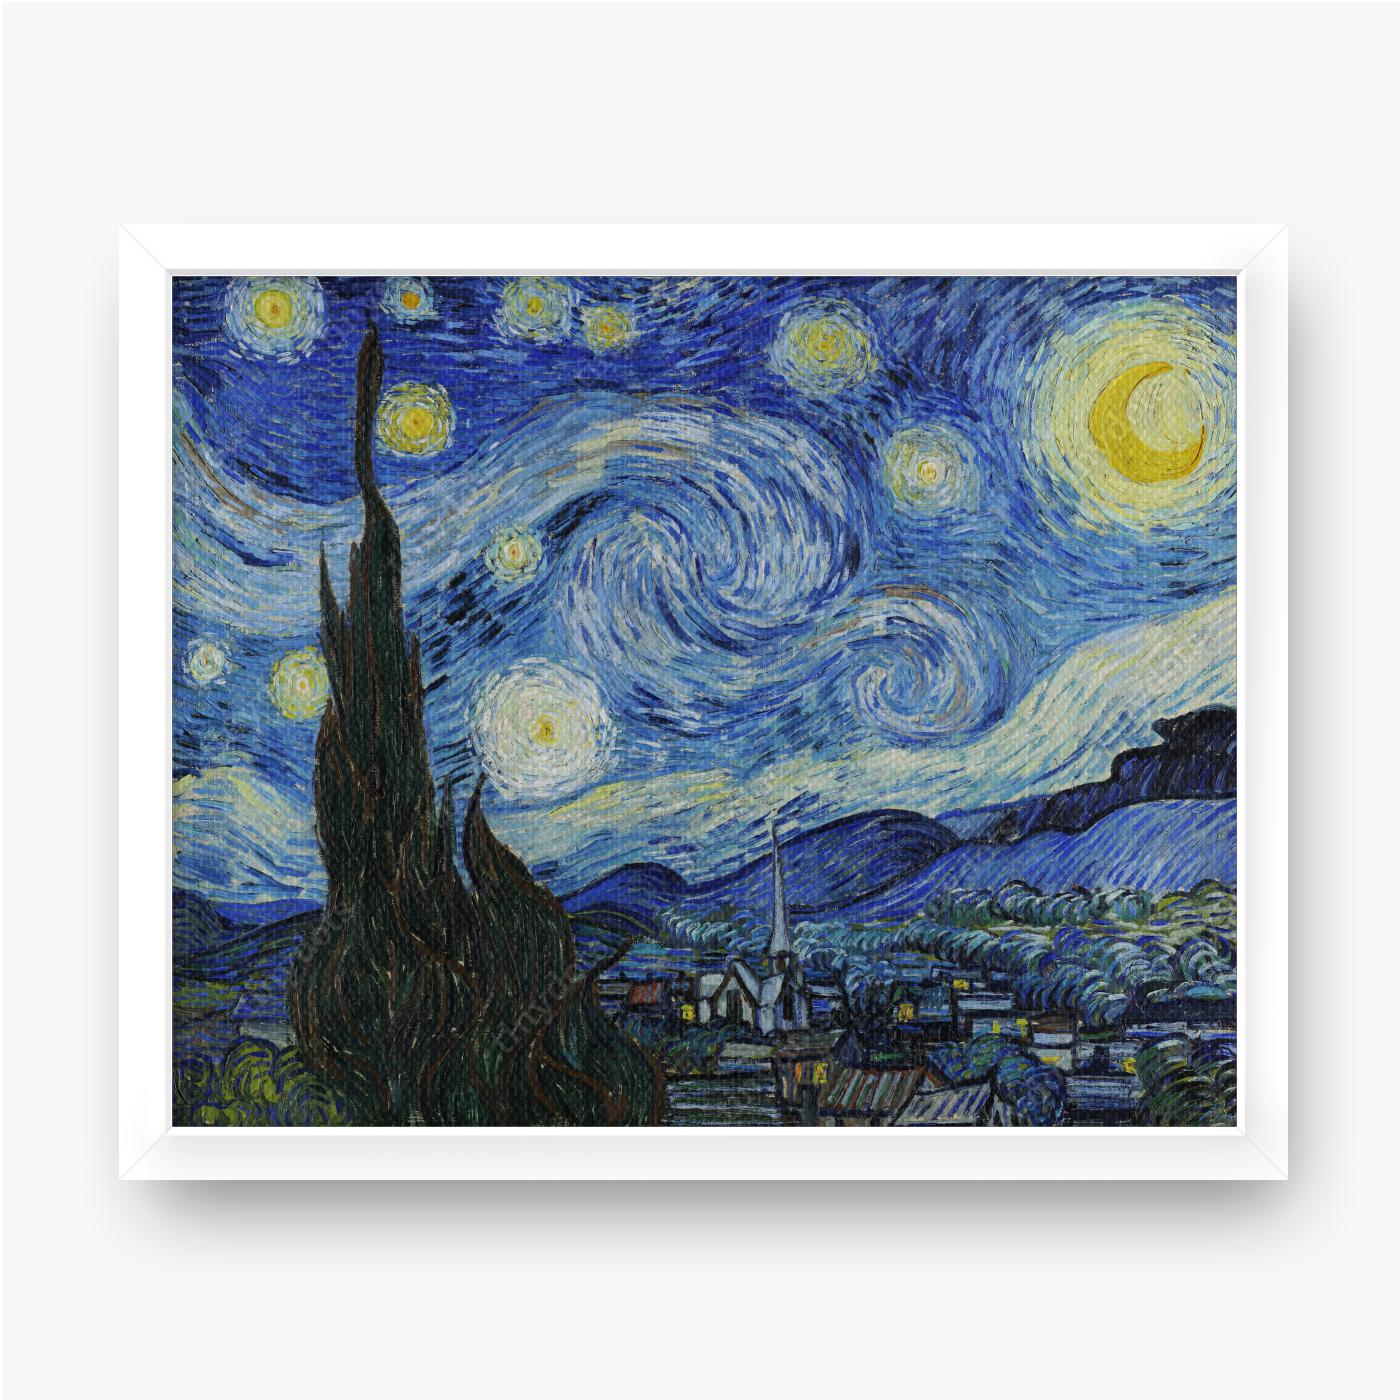 Obraz na płótnie w ramie Vincent van Gogh Gwiaździsta noc 1889